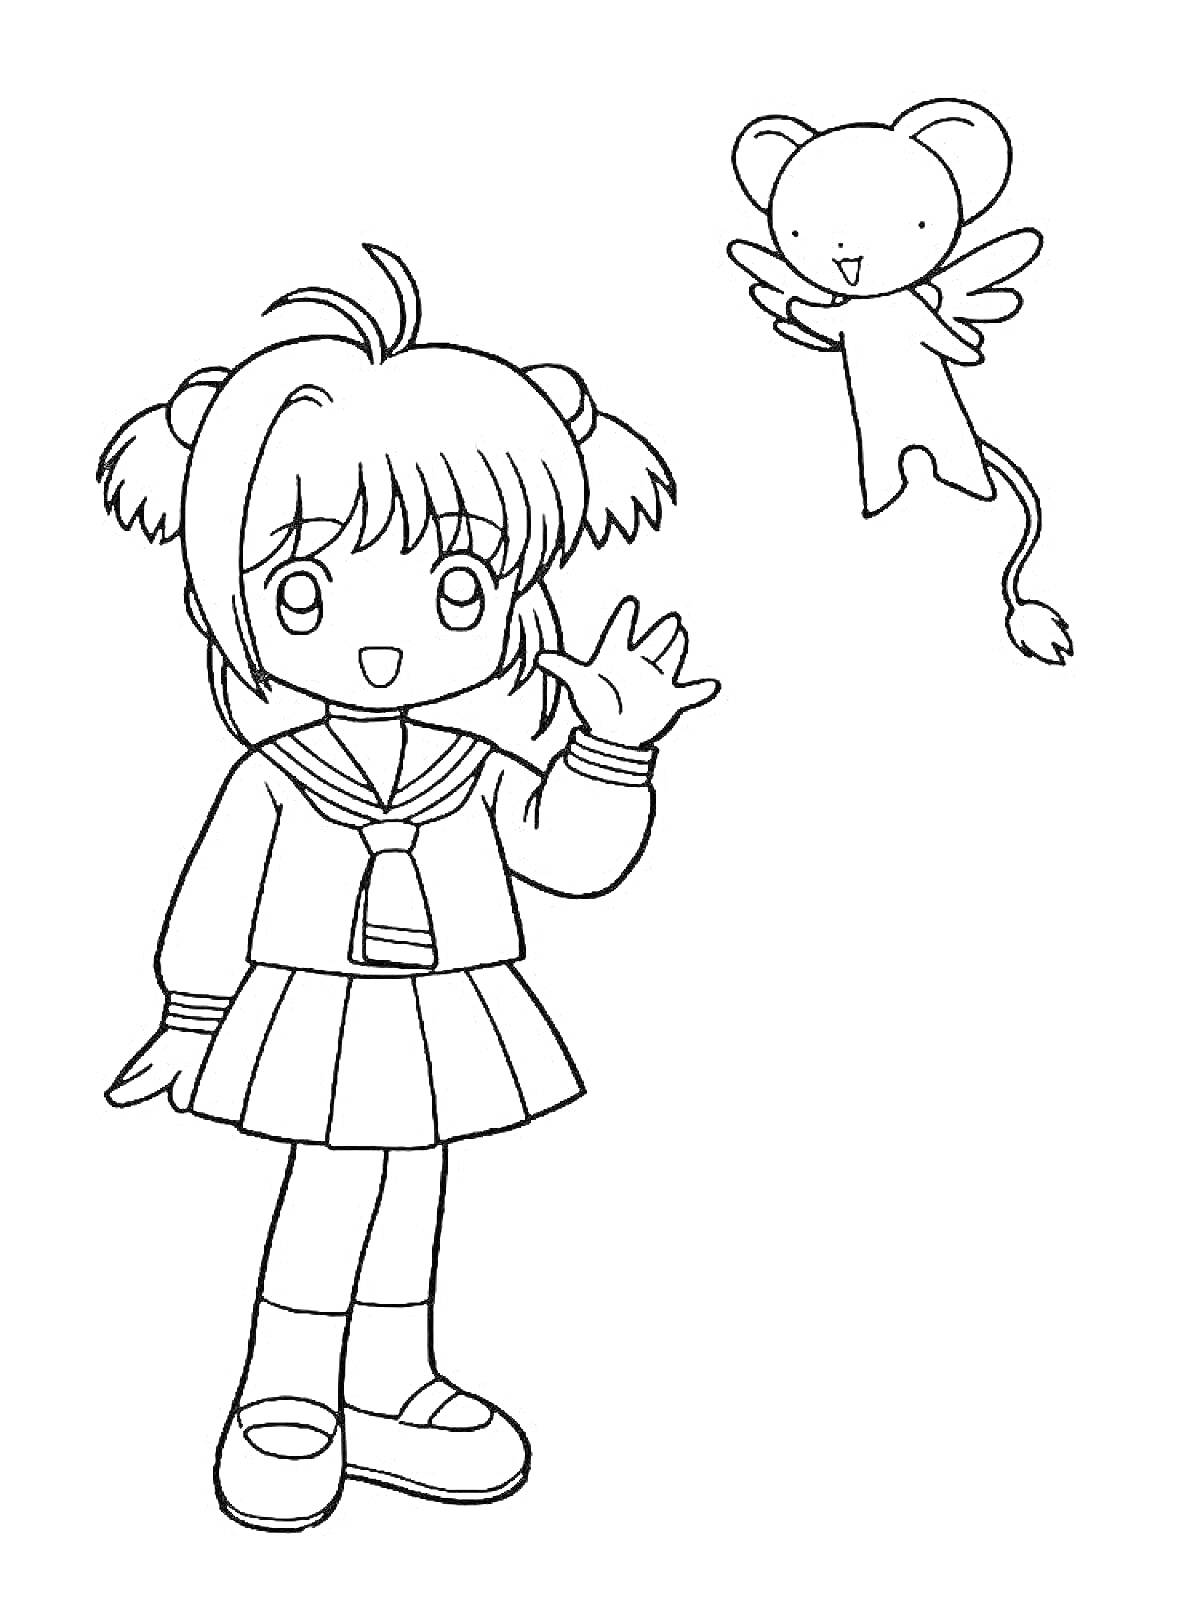 Раскраска Девочка в школьной форме и летающий мышонок с крыльями